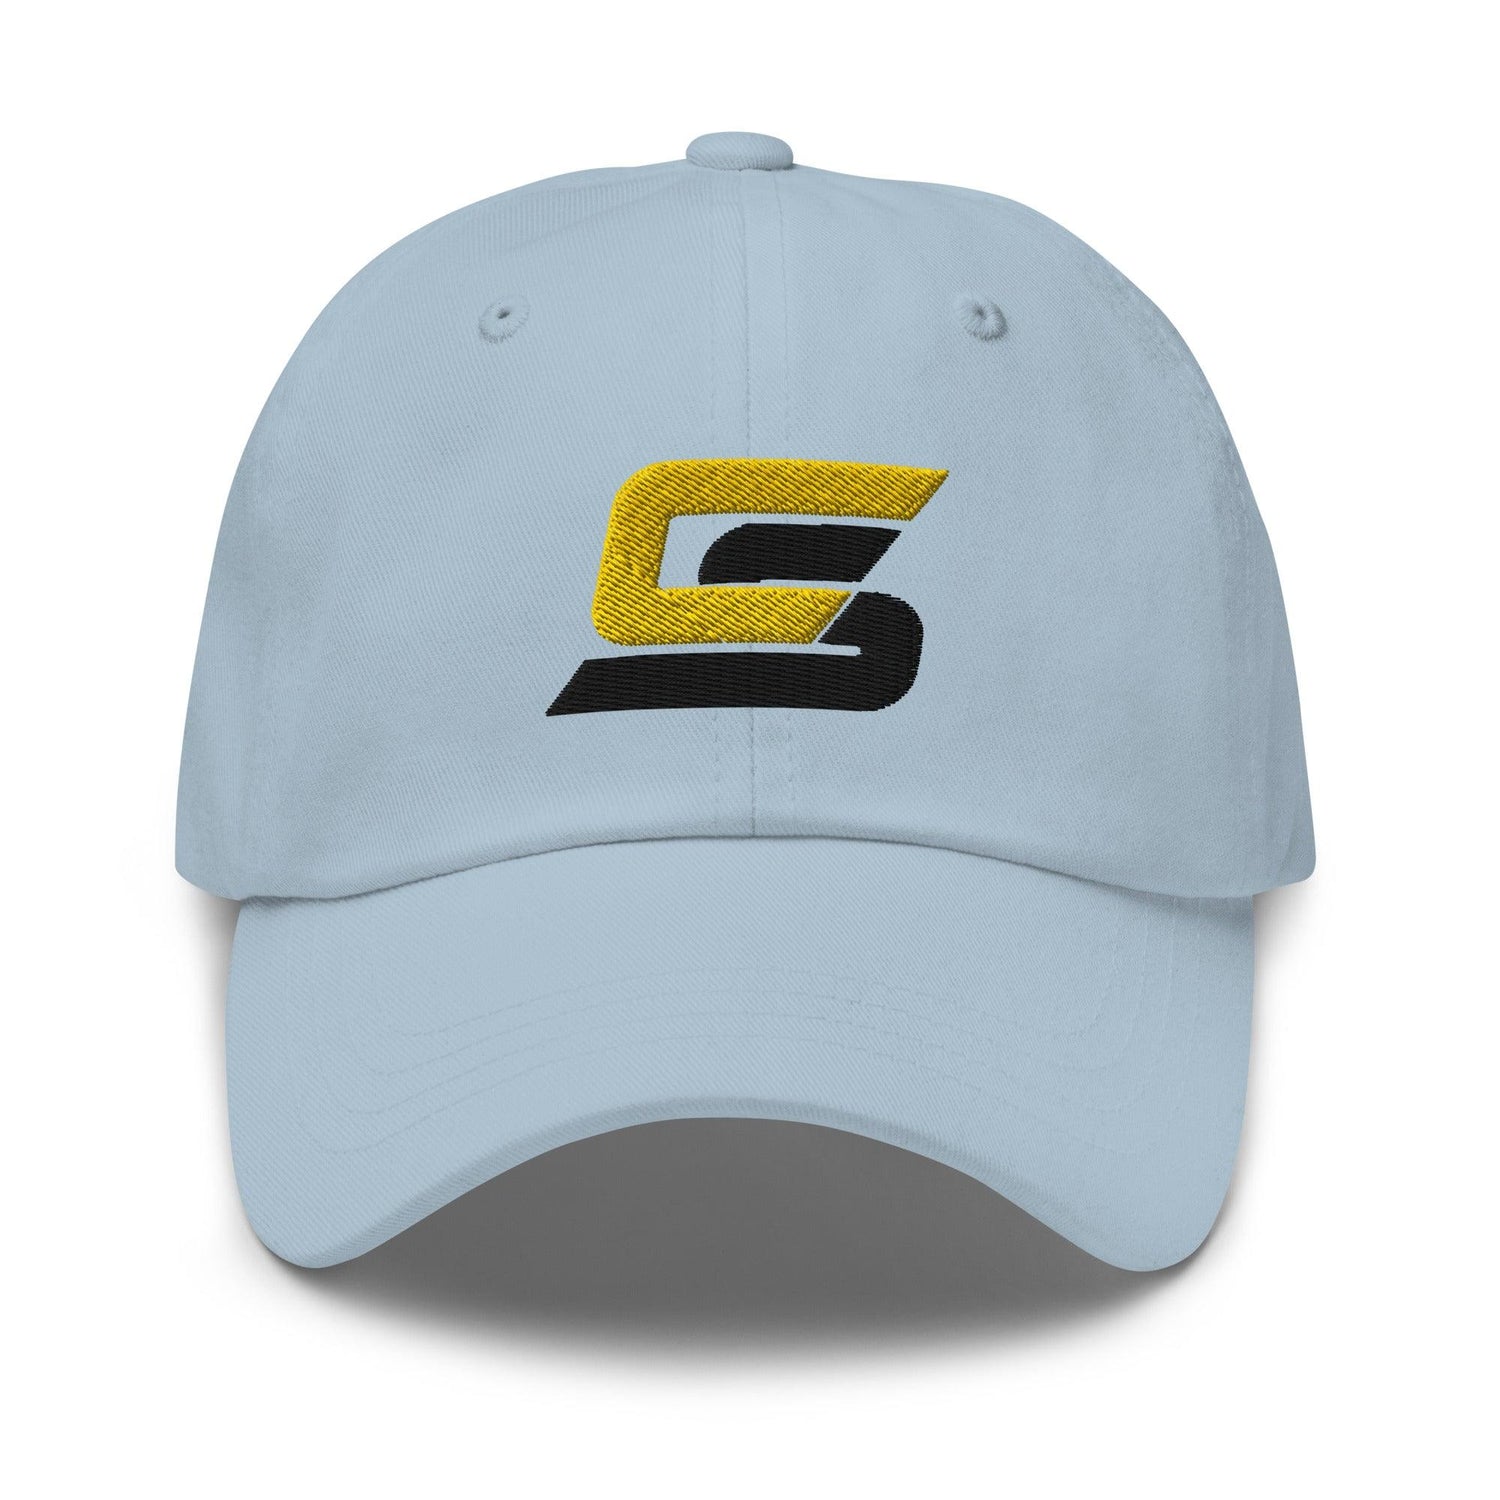 Cory Spangenberg "Elite" hat - Fan Arch